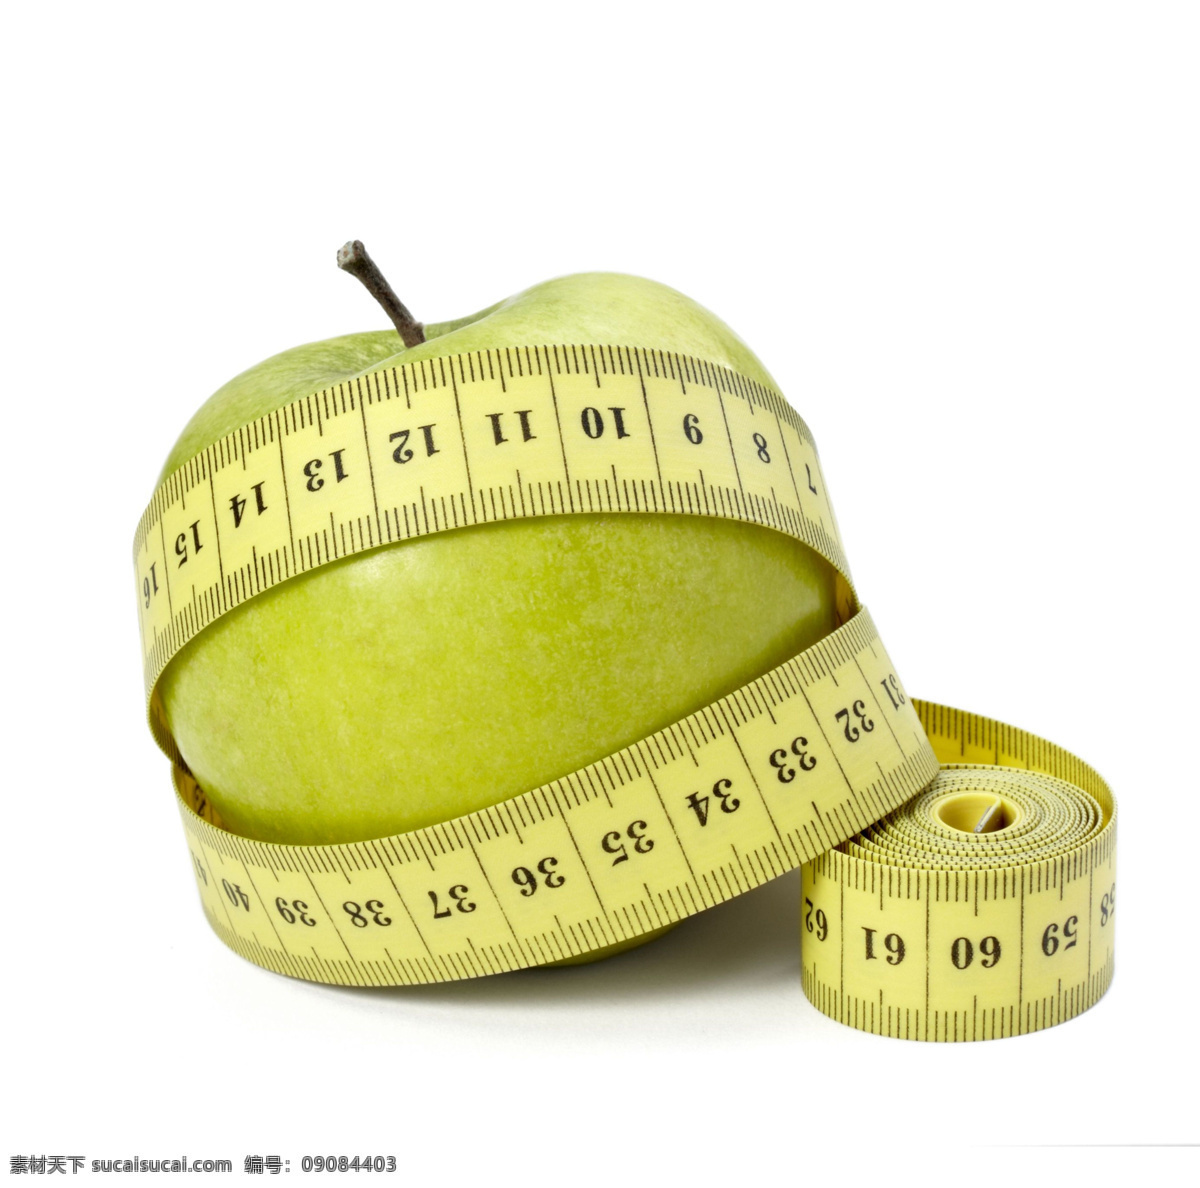 软尺 缠绕 苹果 皮尺 节食 减肥 瘦身 新鲜水果 美食图片 餐饮美食